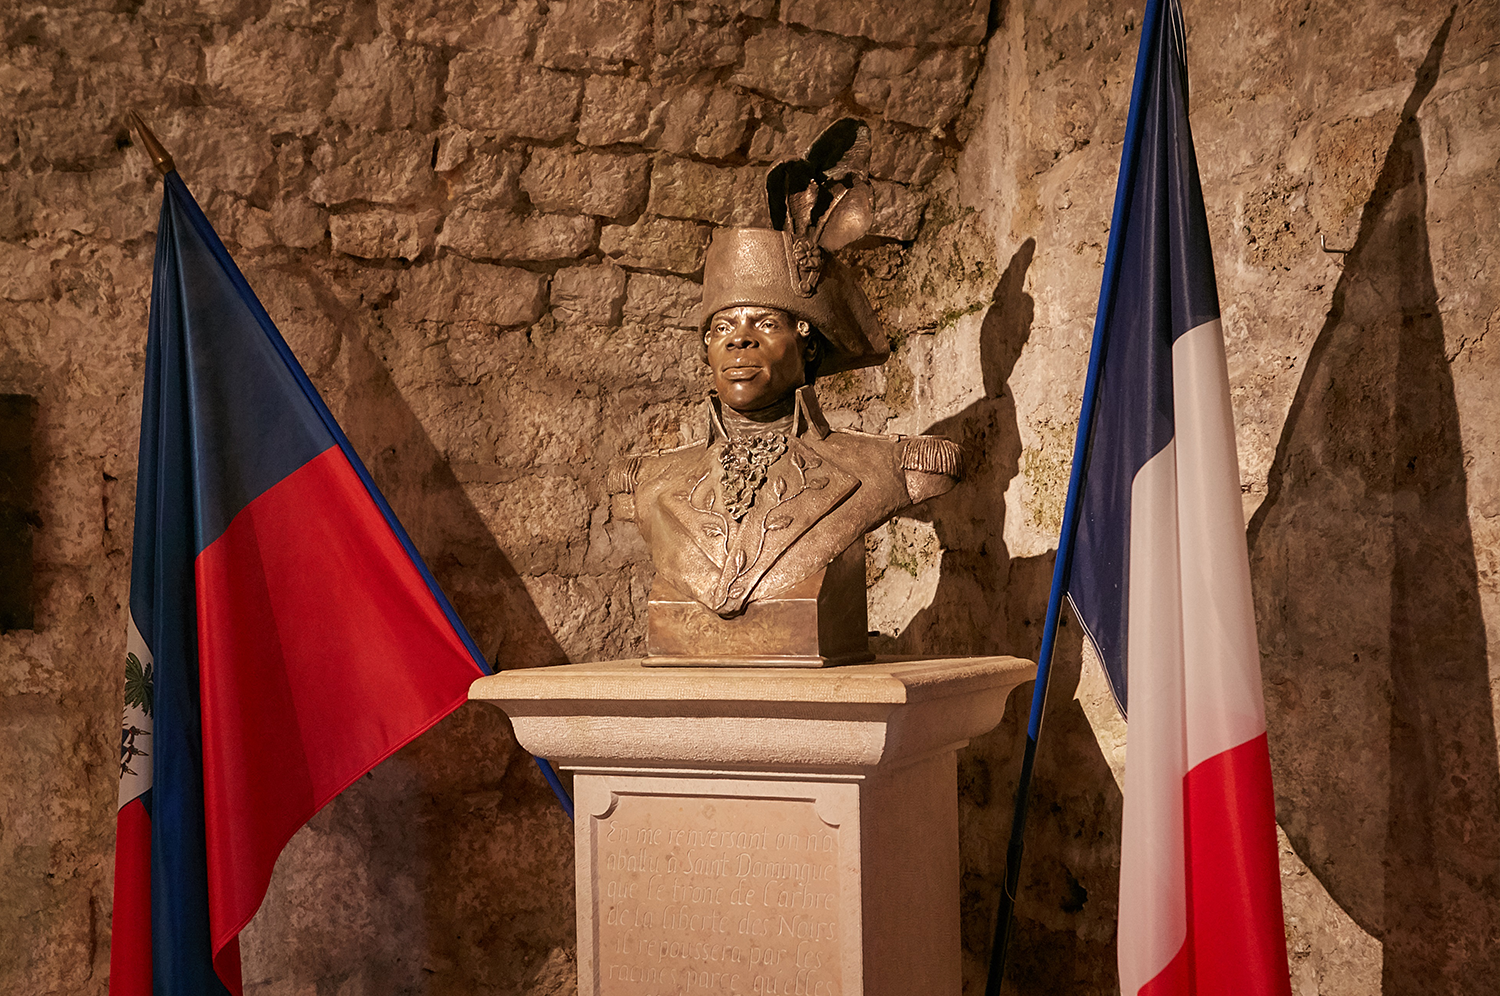     Abolition de l'esclavage : Macron rend hommage à Toussaint Louverture

